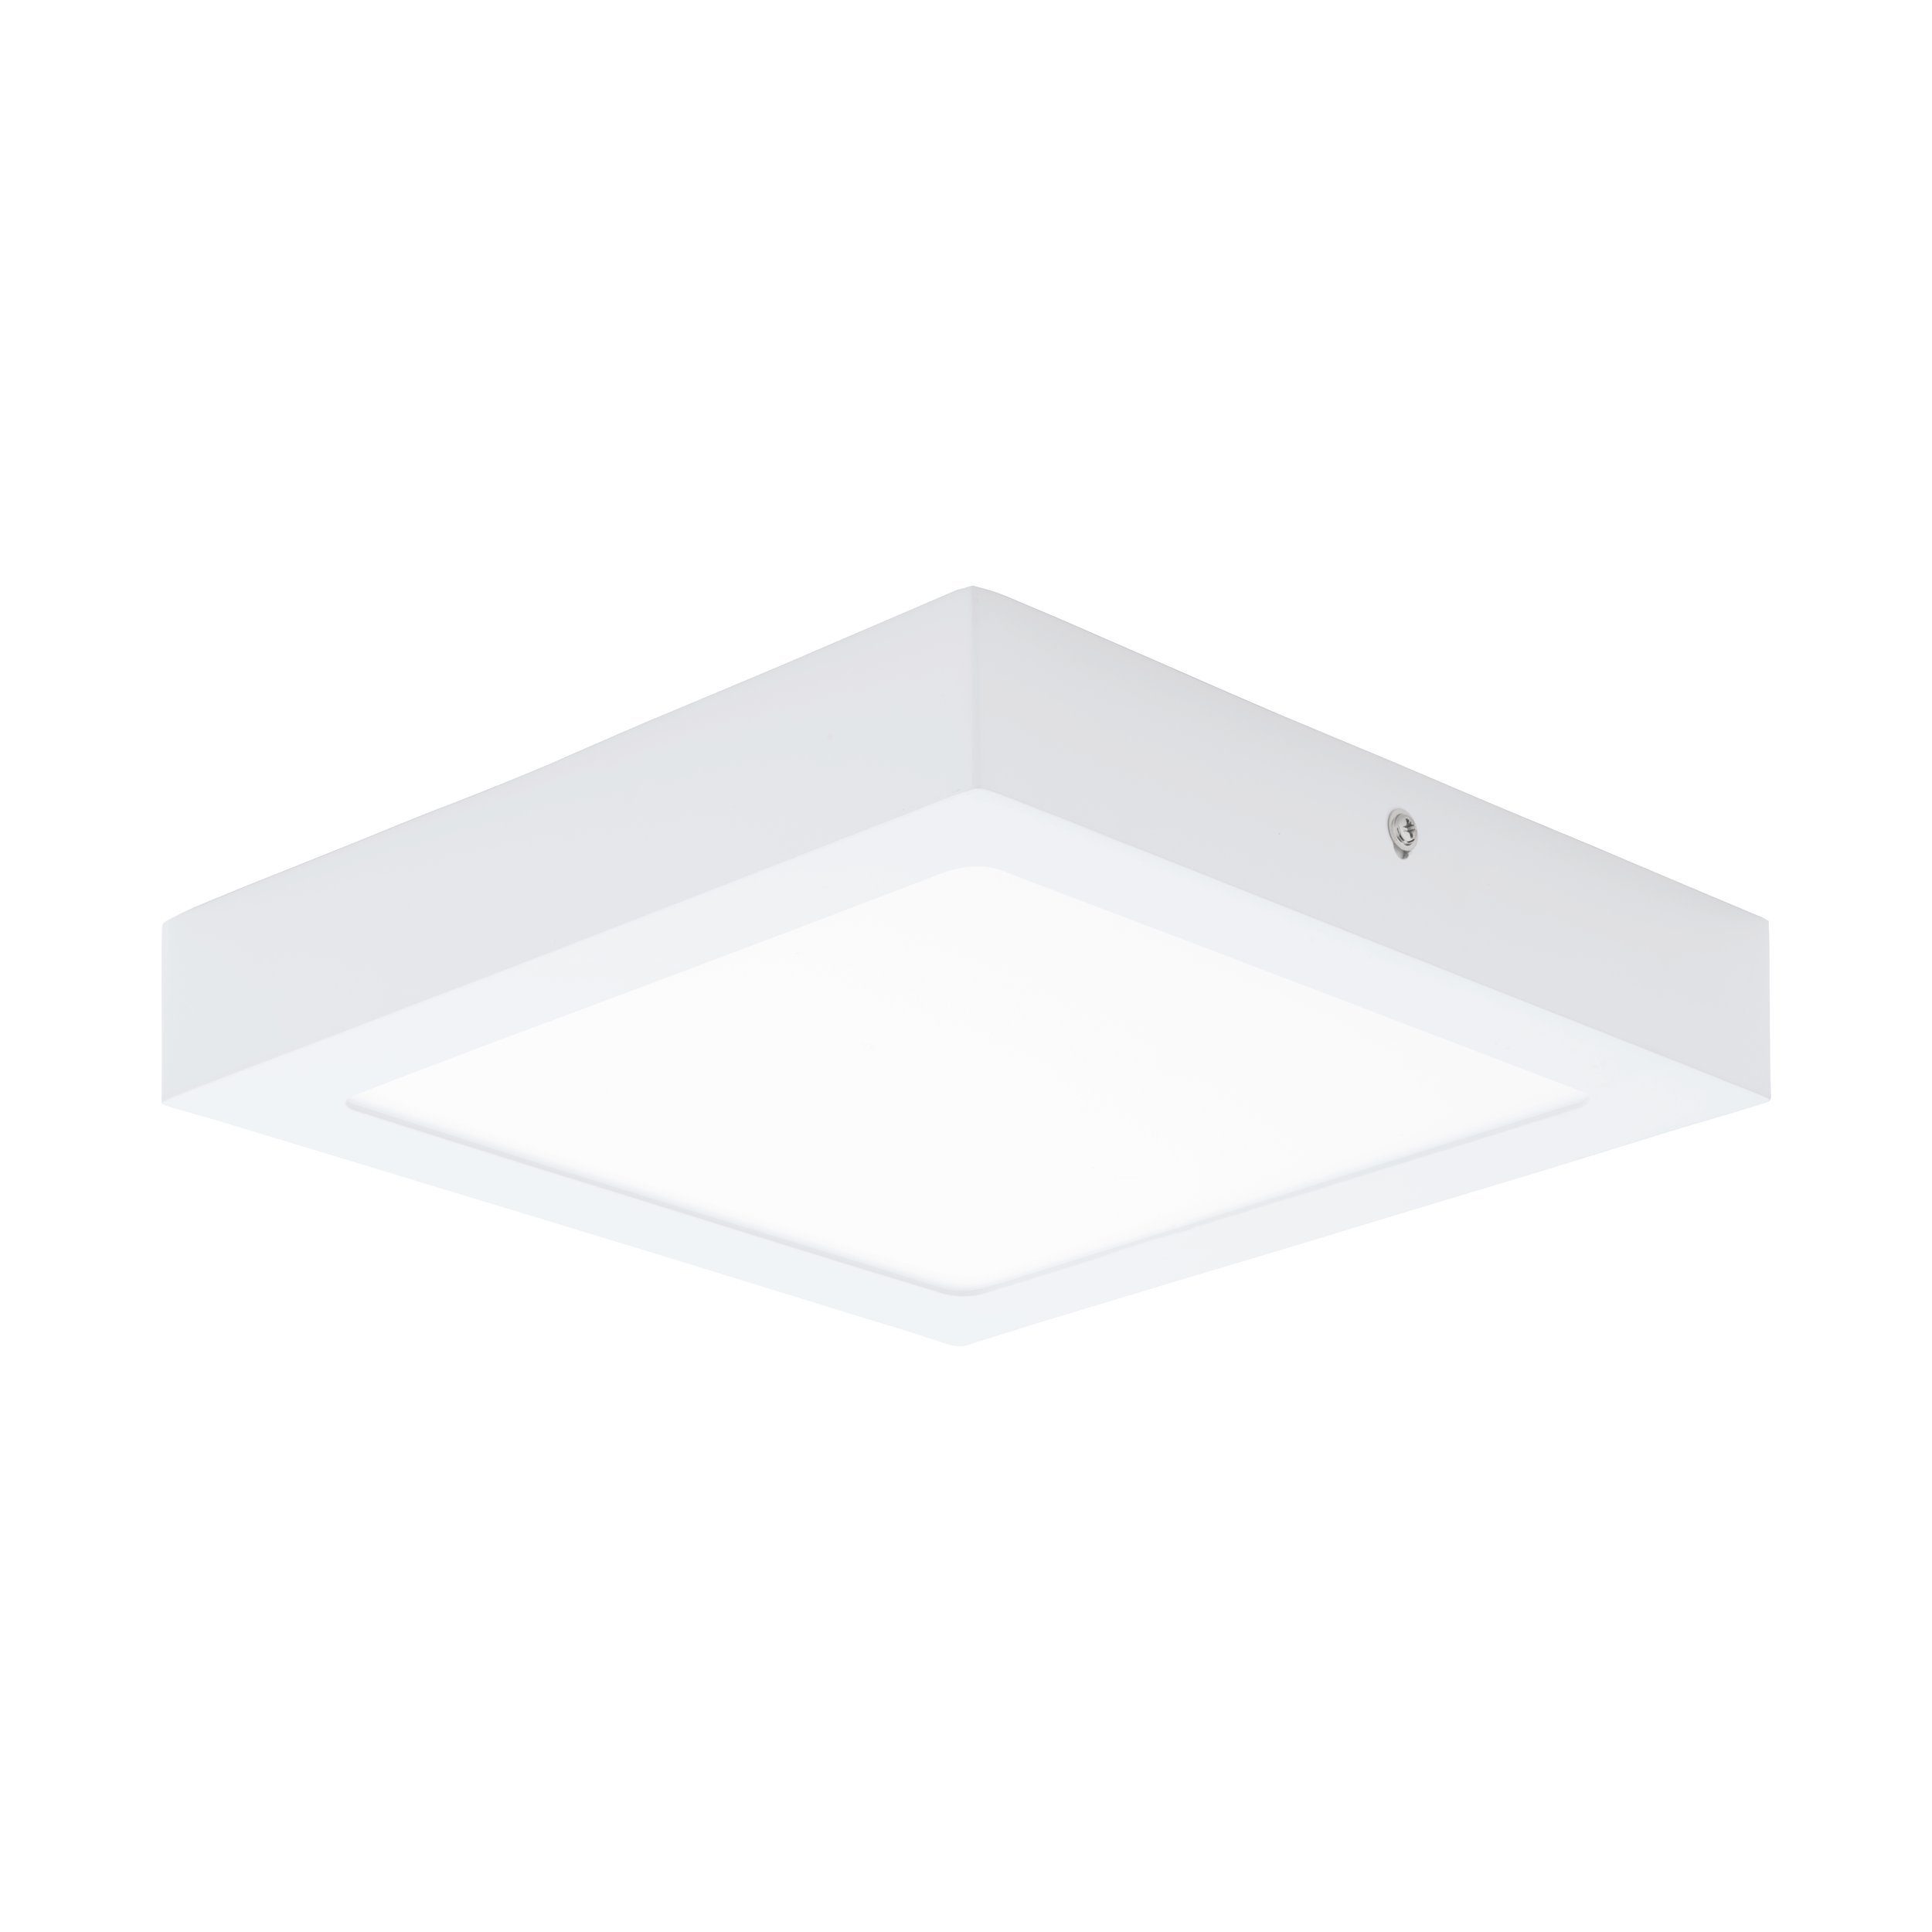 EGLO Aufbauleuchte Fueva 1, Leuchtmittel inklusive, Deckenlampe weiß, 22.5 cm, warmweiß, Deckenleuchte, Lampe